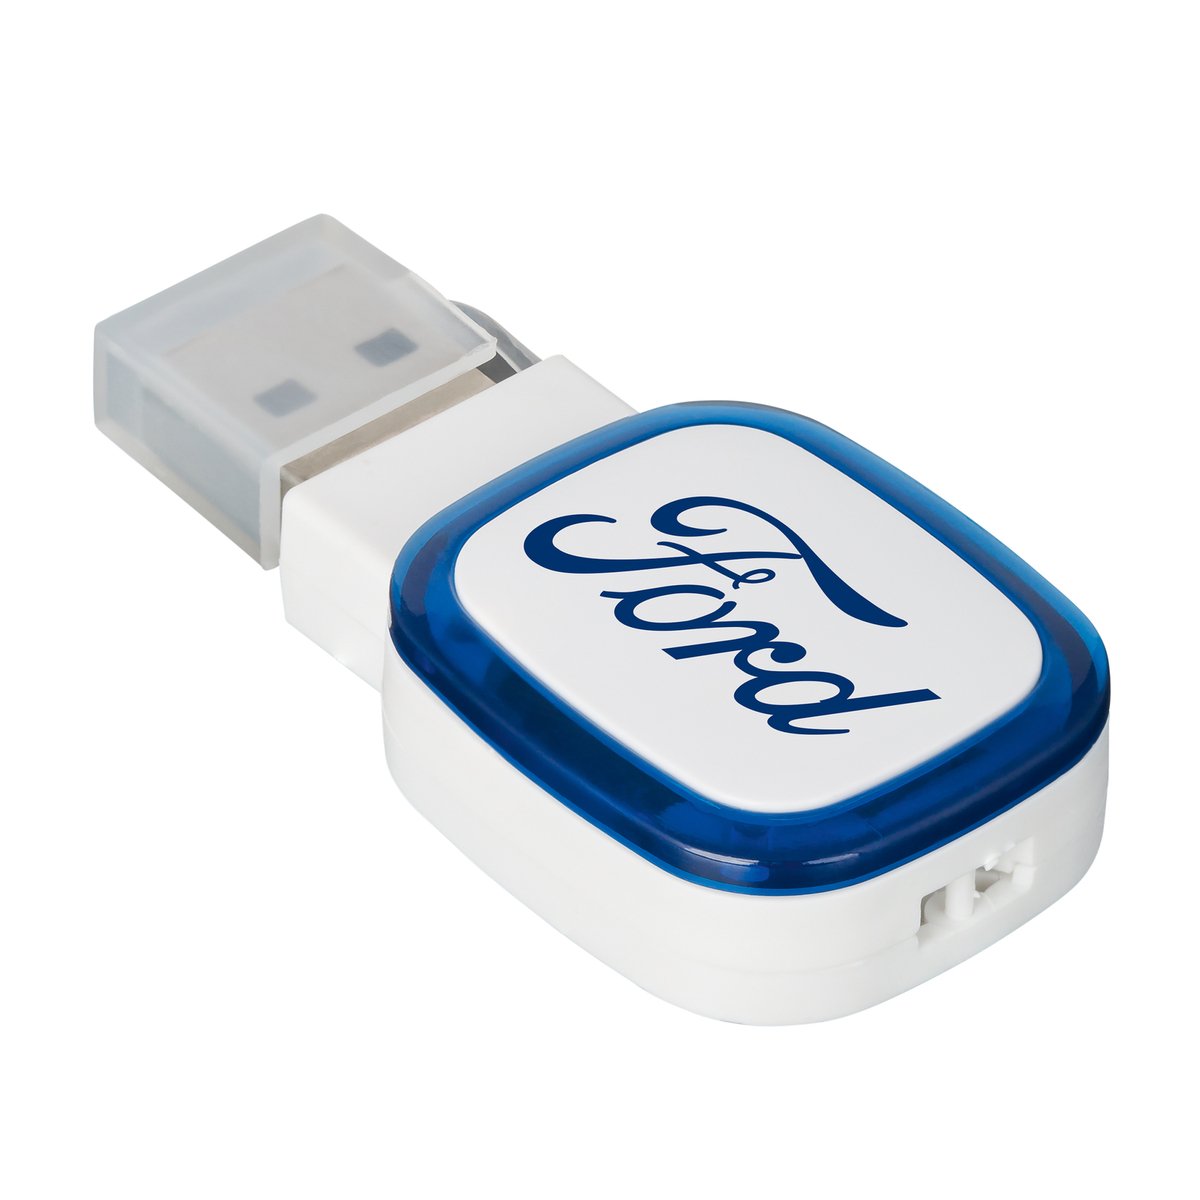 USB-Speicherstick COLLECTION 500 blau 16GB